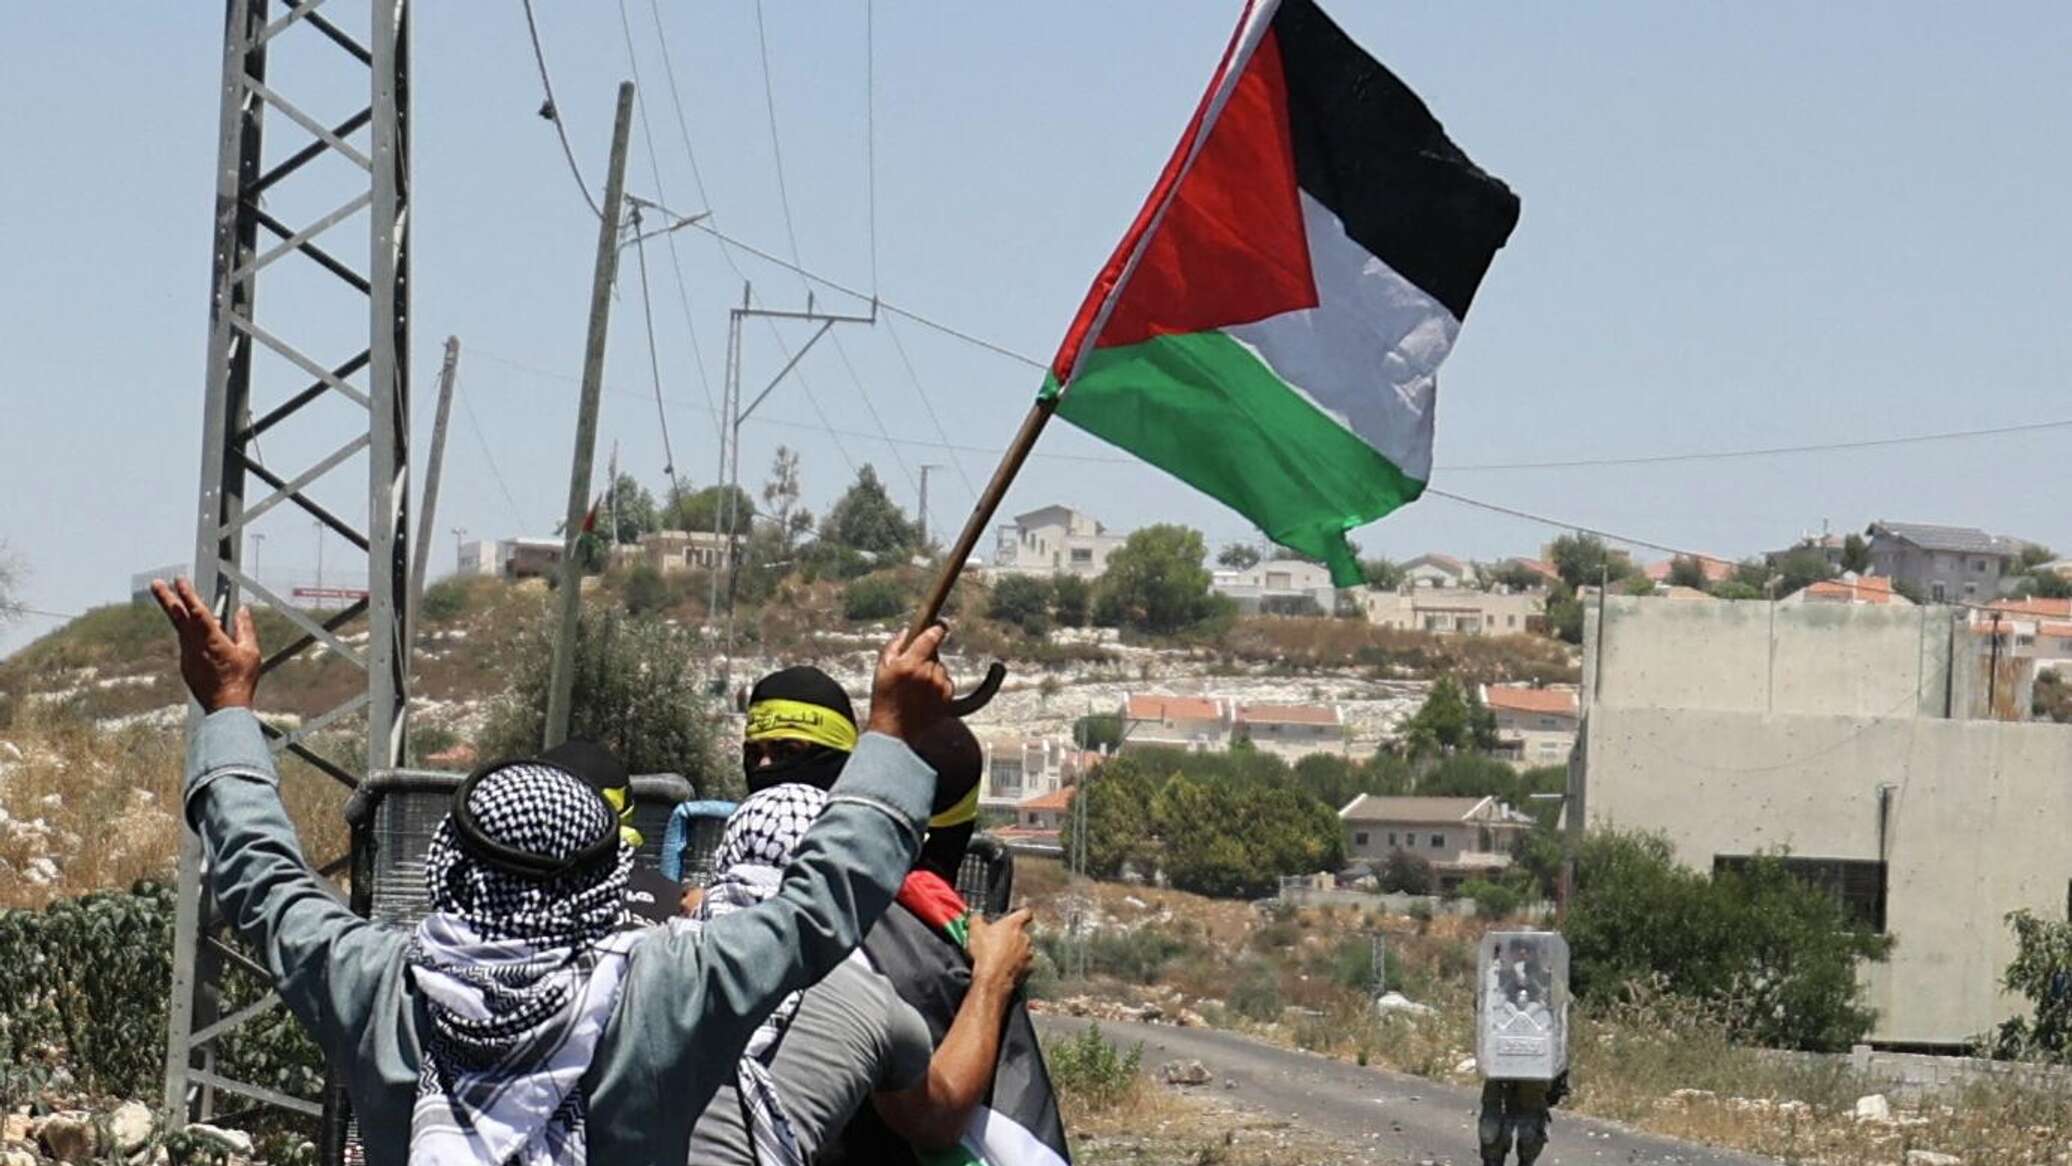 وفد برلماني جزائري في تركيا لدعم مشروع عضوية دائمة لفلسطين بالأمم المتحدة